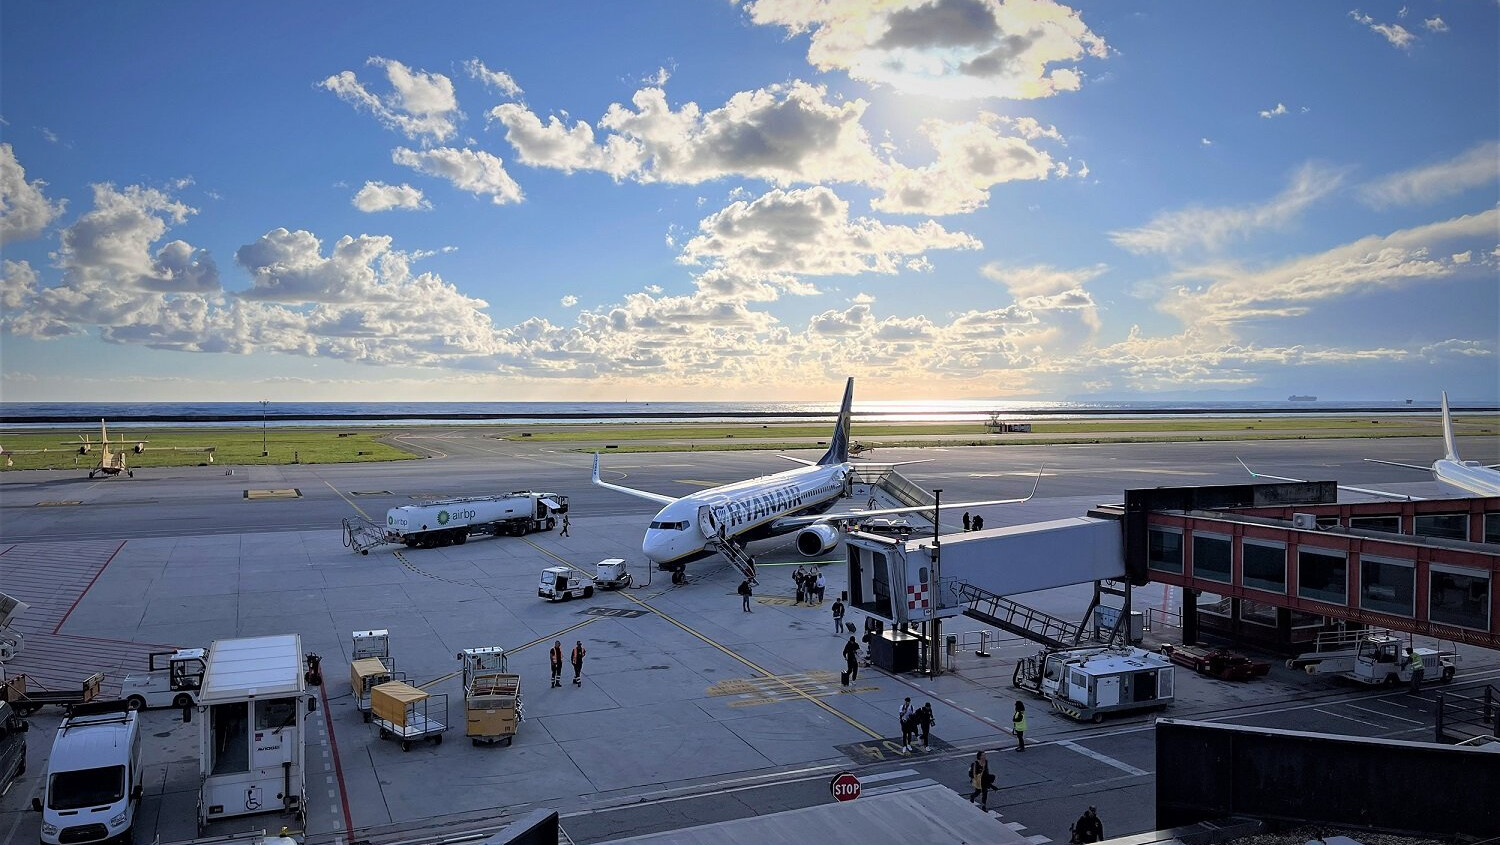 Aeroporto di Genova: offerta da 777 Partners, Msc, Costa Crociere, Spinelli-Hapag Lloyd e Levorato Marcevaggi